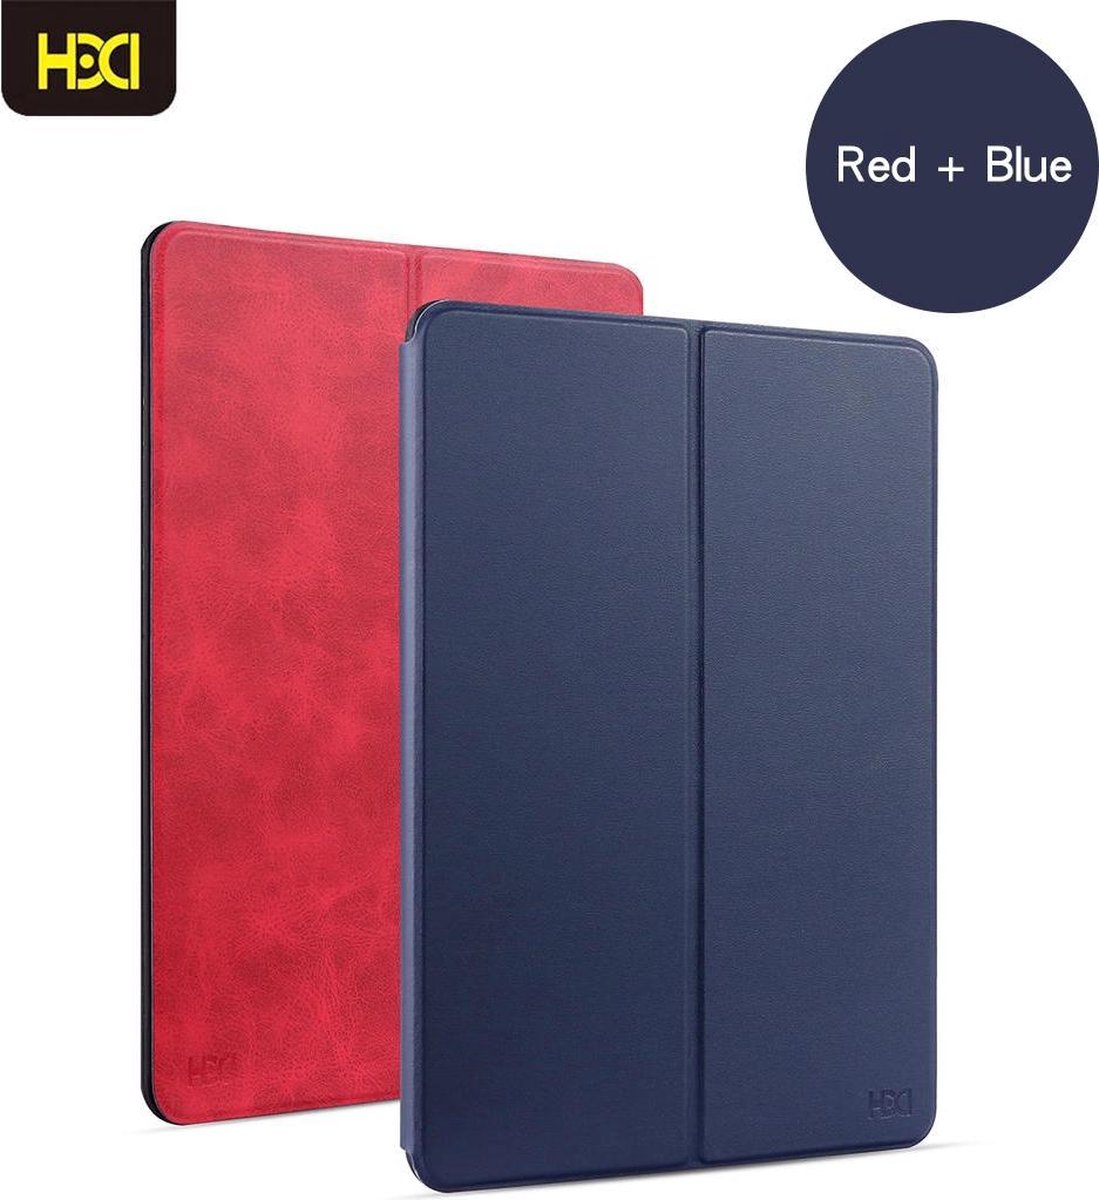 HDD Luxe/Hoesje/Smartcover/Auto Wake Functie/ 2 kleuren in 1 hoesje/ Donkerblauw + Rood geschikt voor Apple iPad MINI 1/2/3 MET PEN